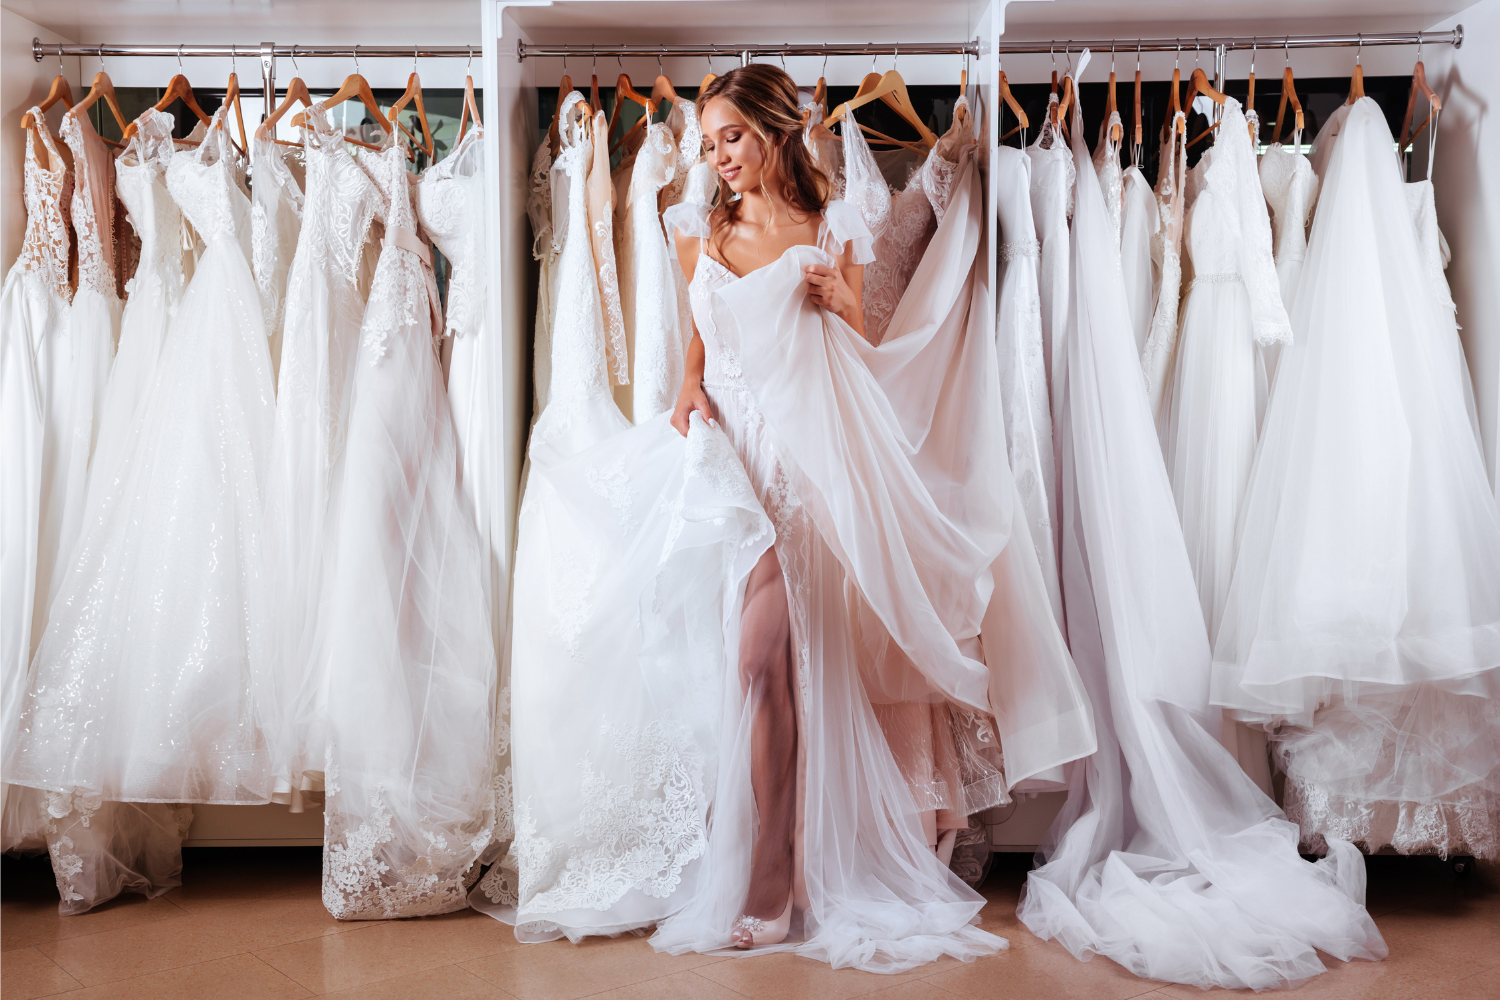 Esküvői ruha kisokos: találd meg az alkatodhoz illőt! - Glamour